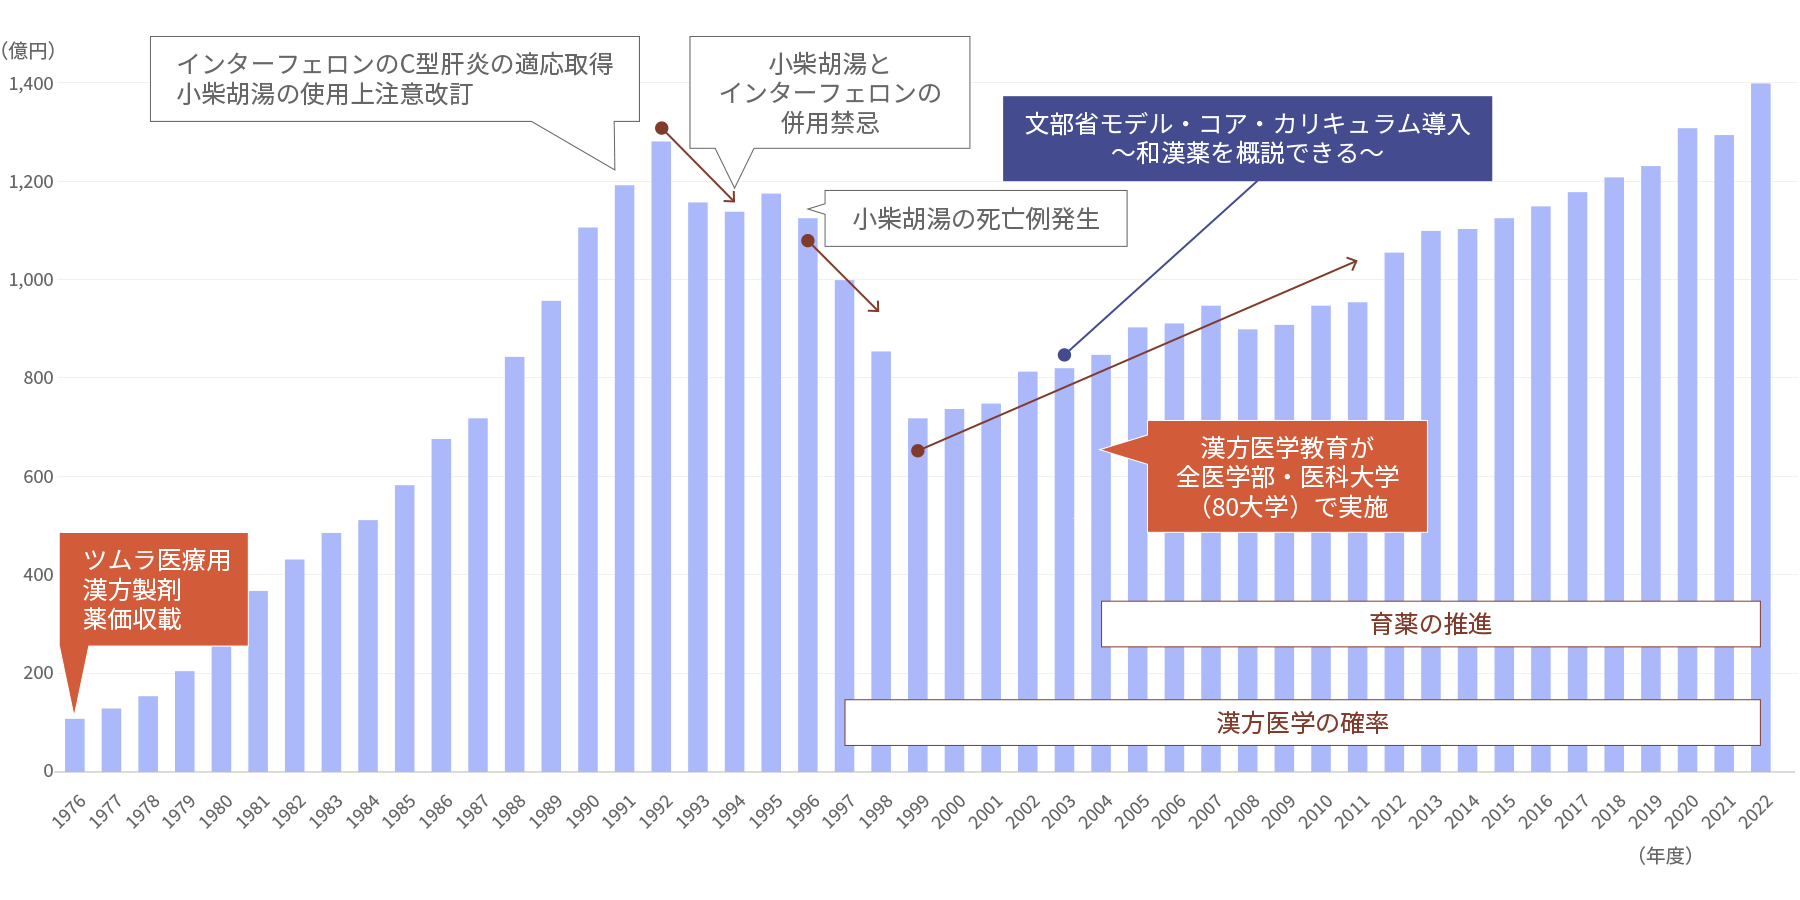 1976年から2022年までの当社の医薬品事業の売上高推移